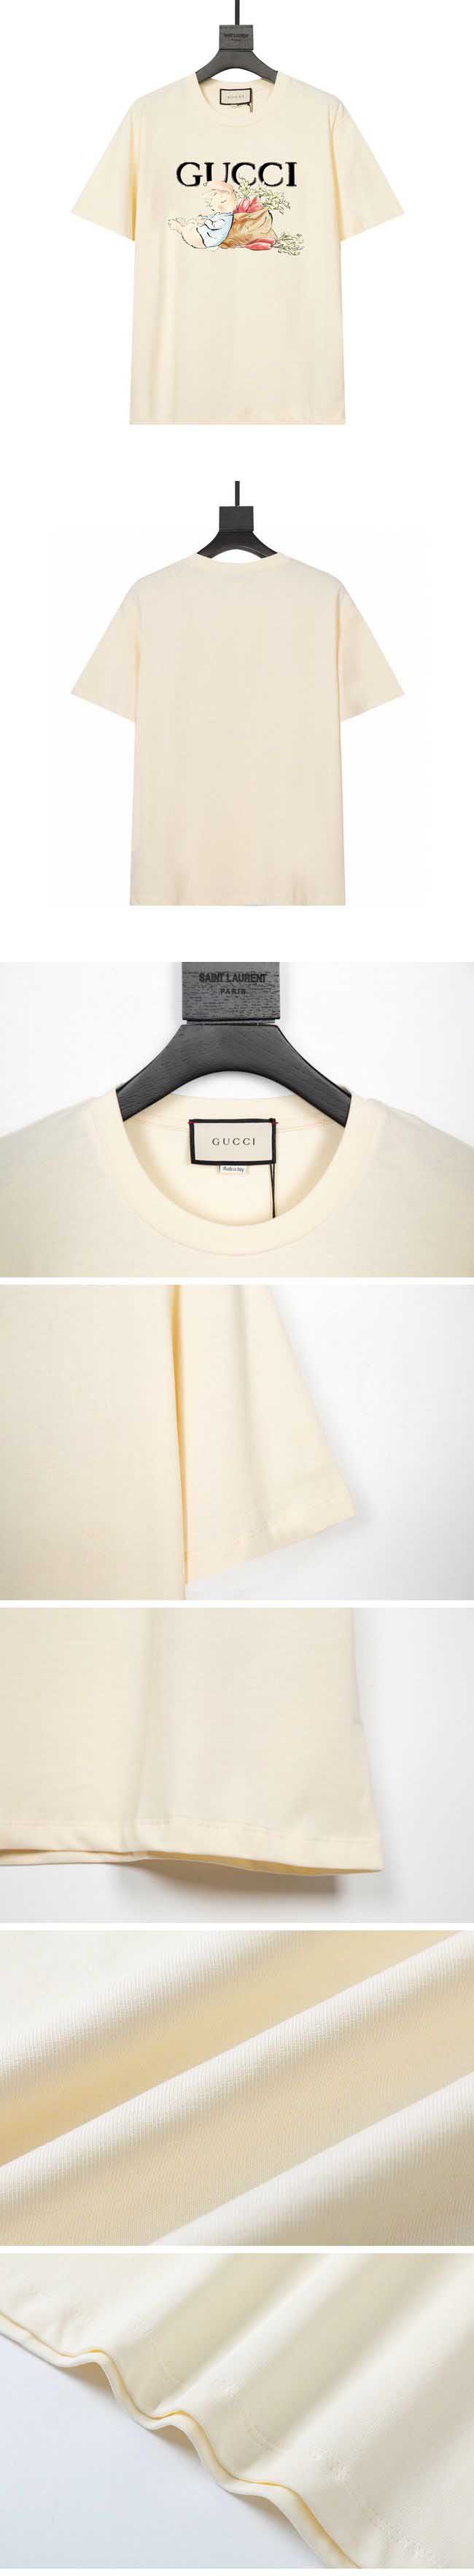 Gucci Rabbit Print Logo Tee グッチ ラビット プリント ロゴ Tシャツ ホワイト